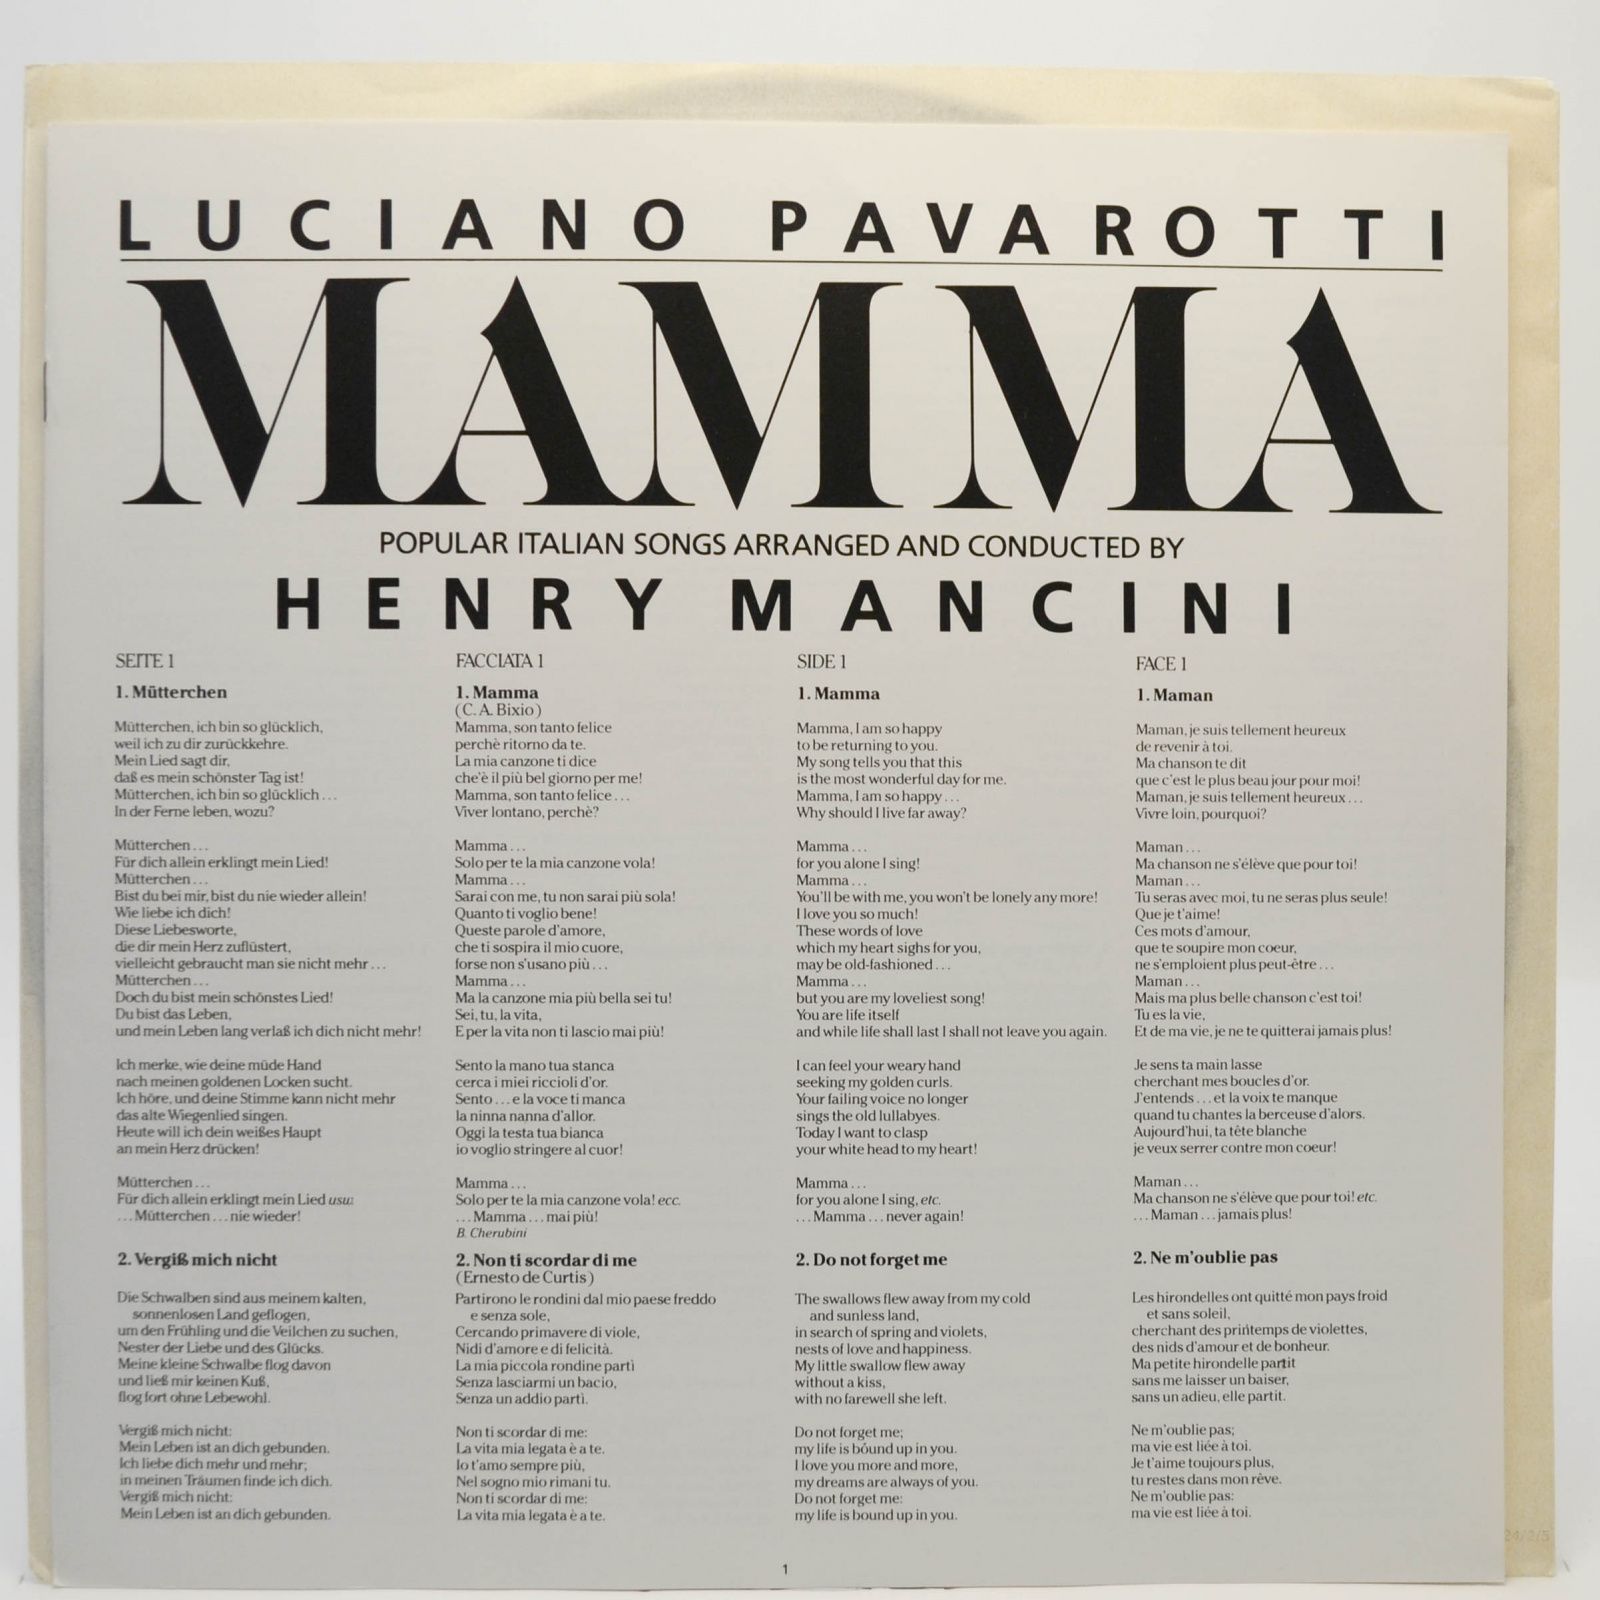 Luciano Pavarotti — Mamma, 1984